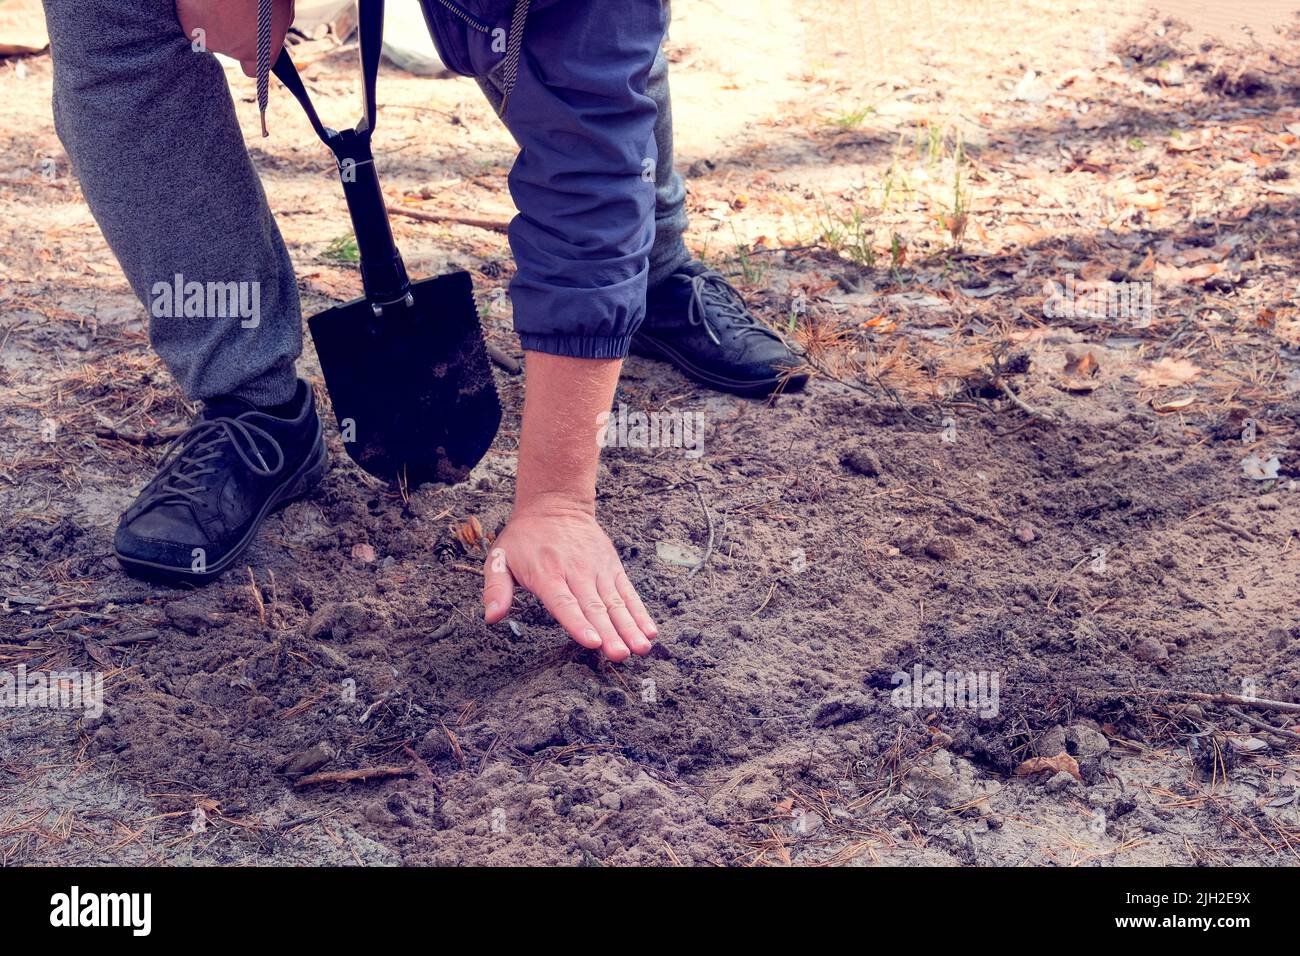 L'uomo scava terreno con una pala nella foresta. Pala nera in mani umane. Foto Stock